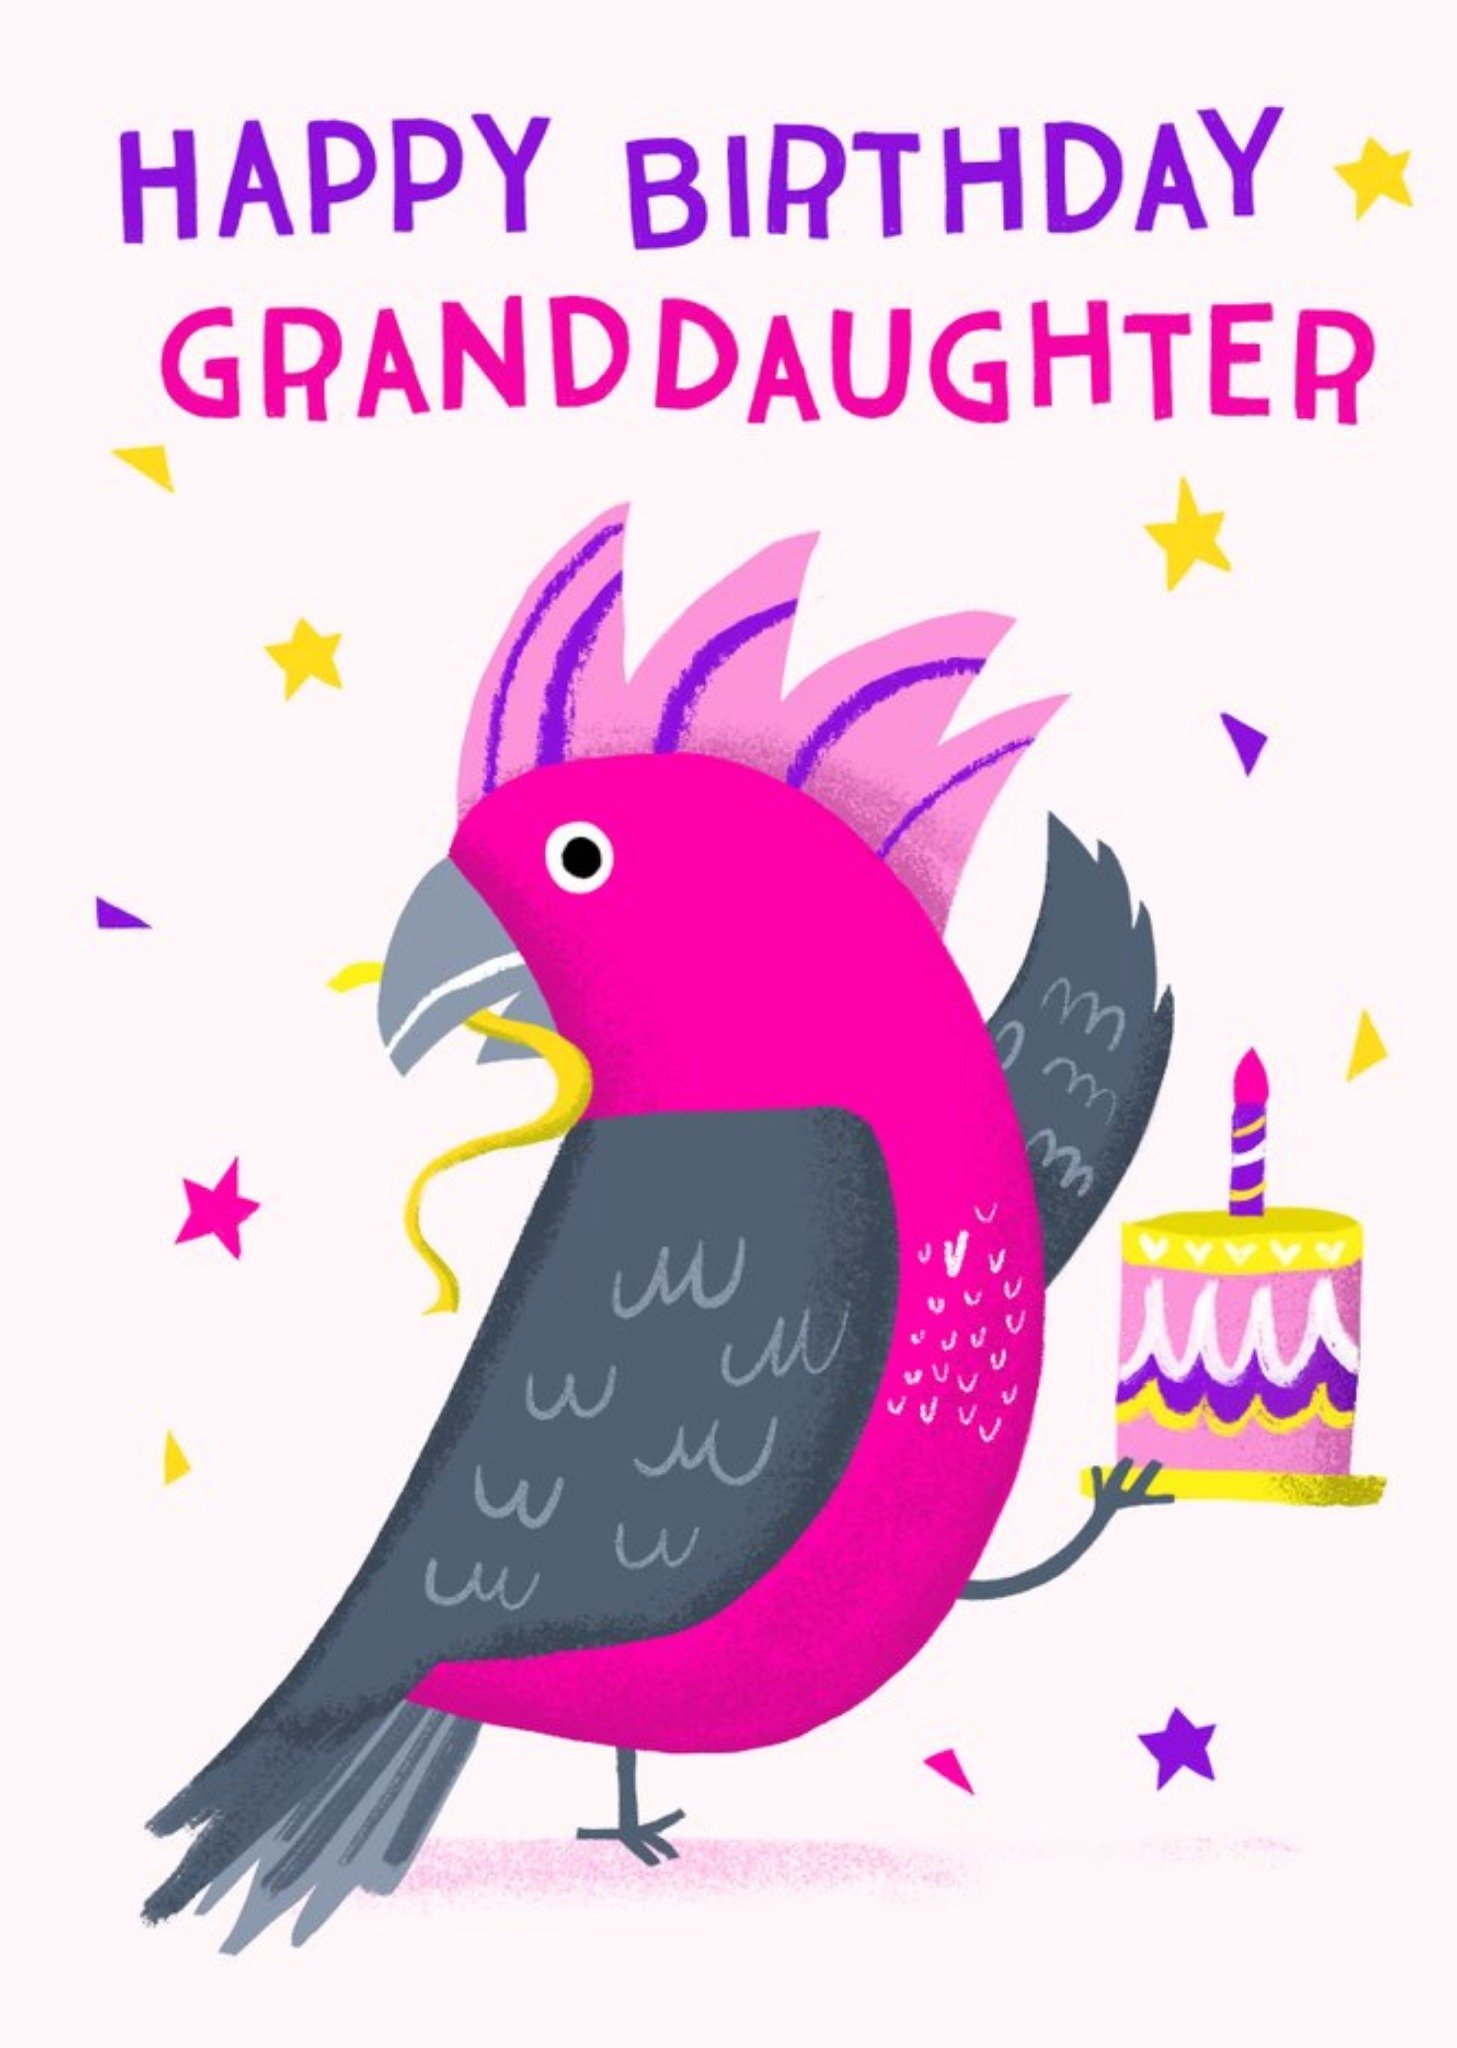 Moonpig Sinead Hanley Illustration Australia Pink Cockatoo Birthday Bird Card Ecard